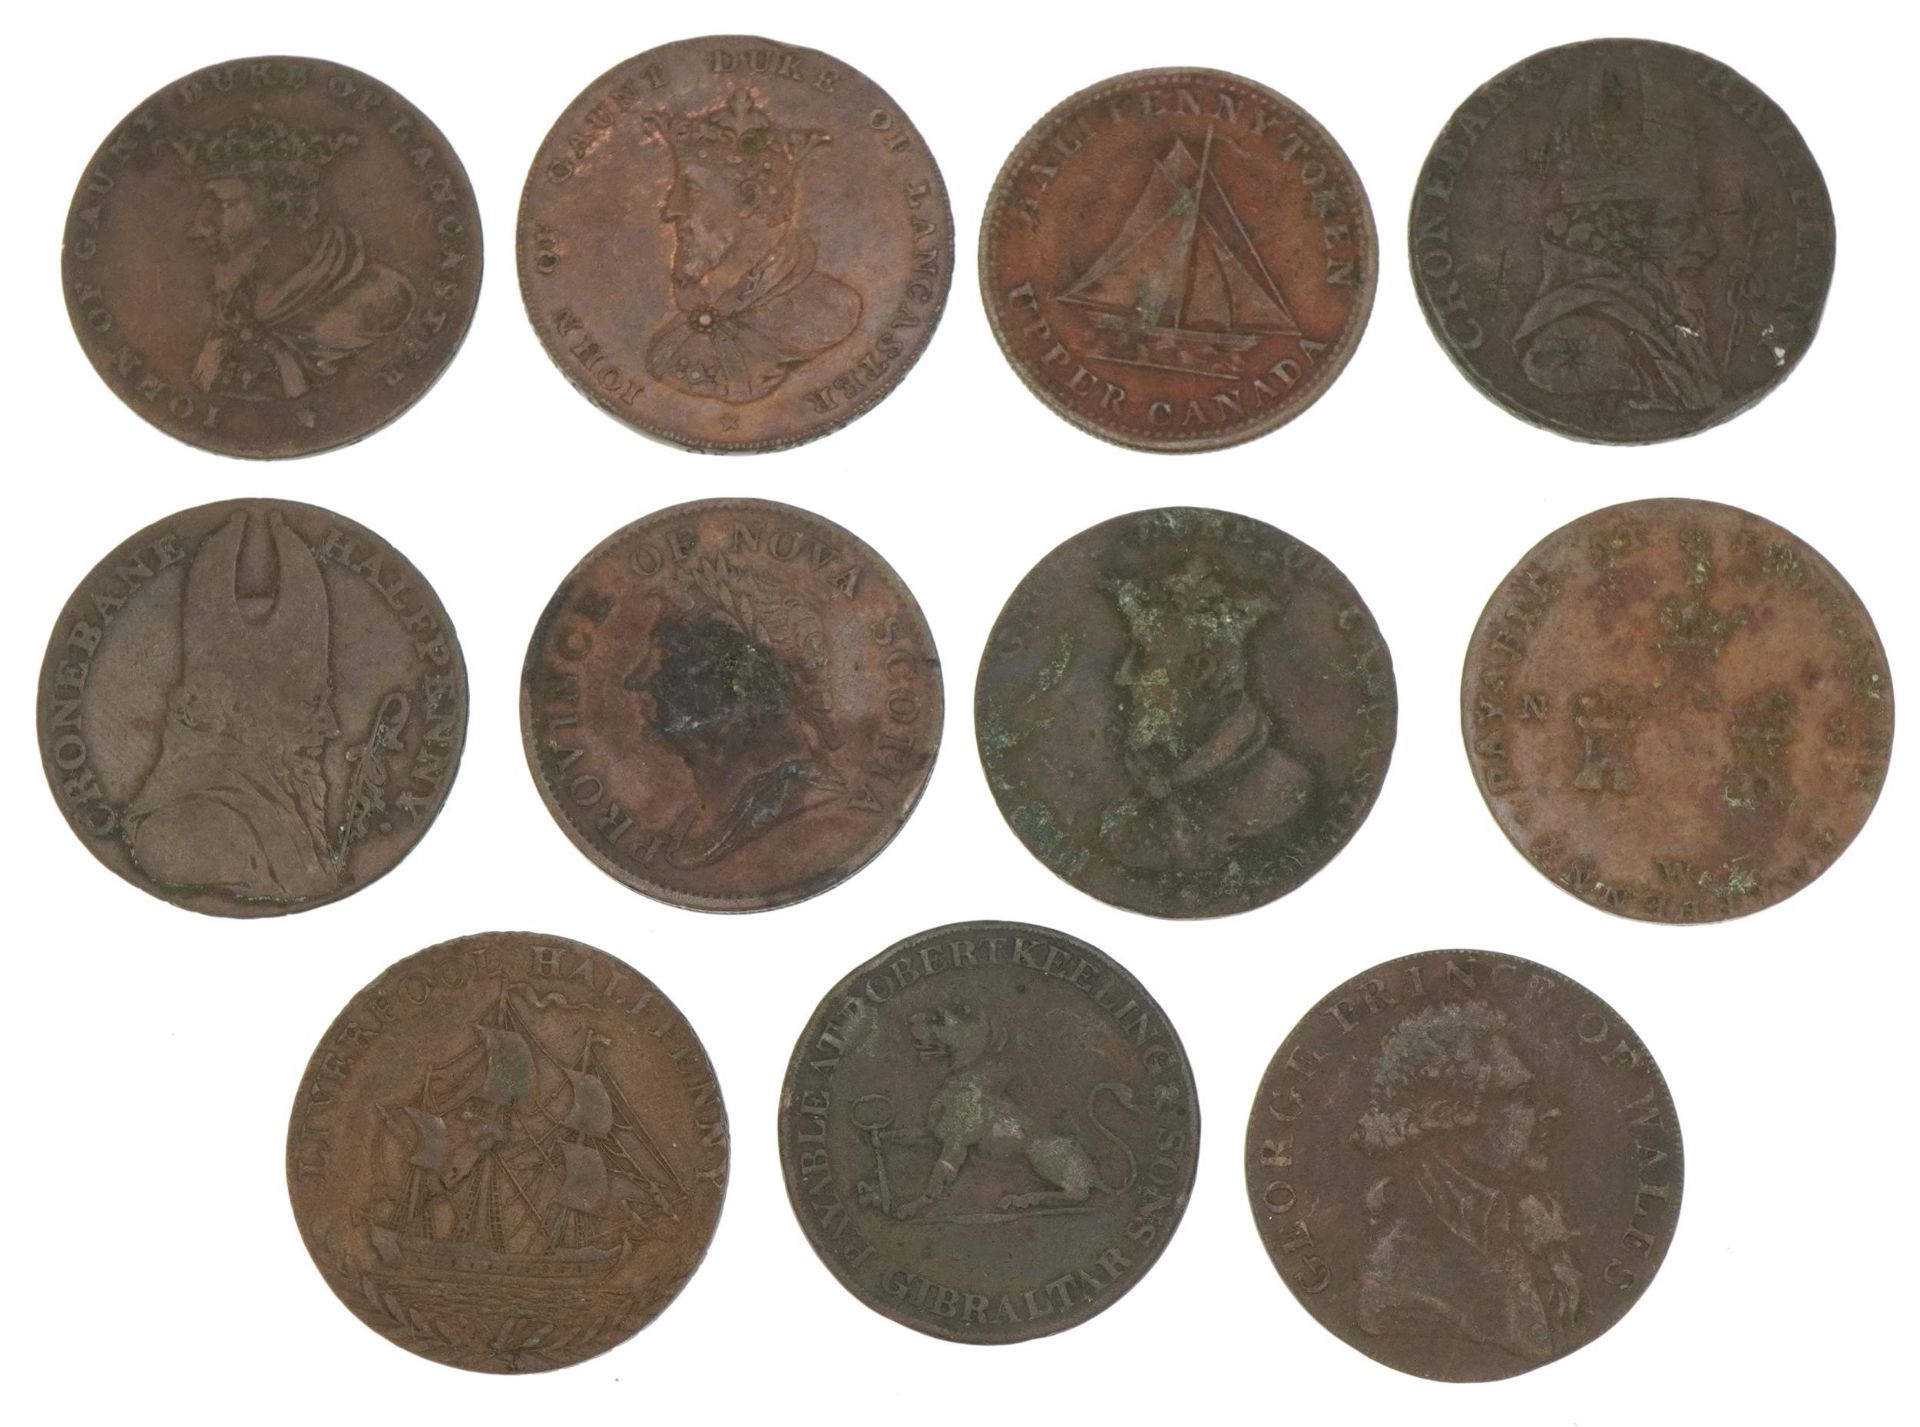 Eleven 18th century half penny tokens including Province of Nova Scotia and value two quartos